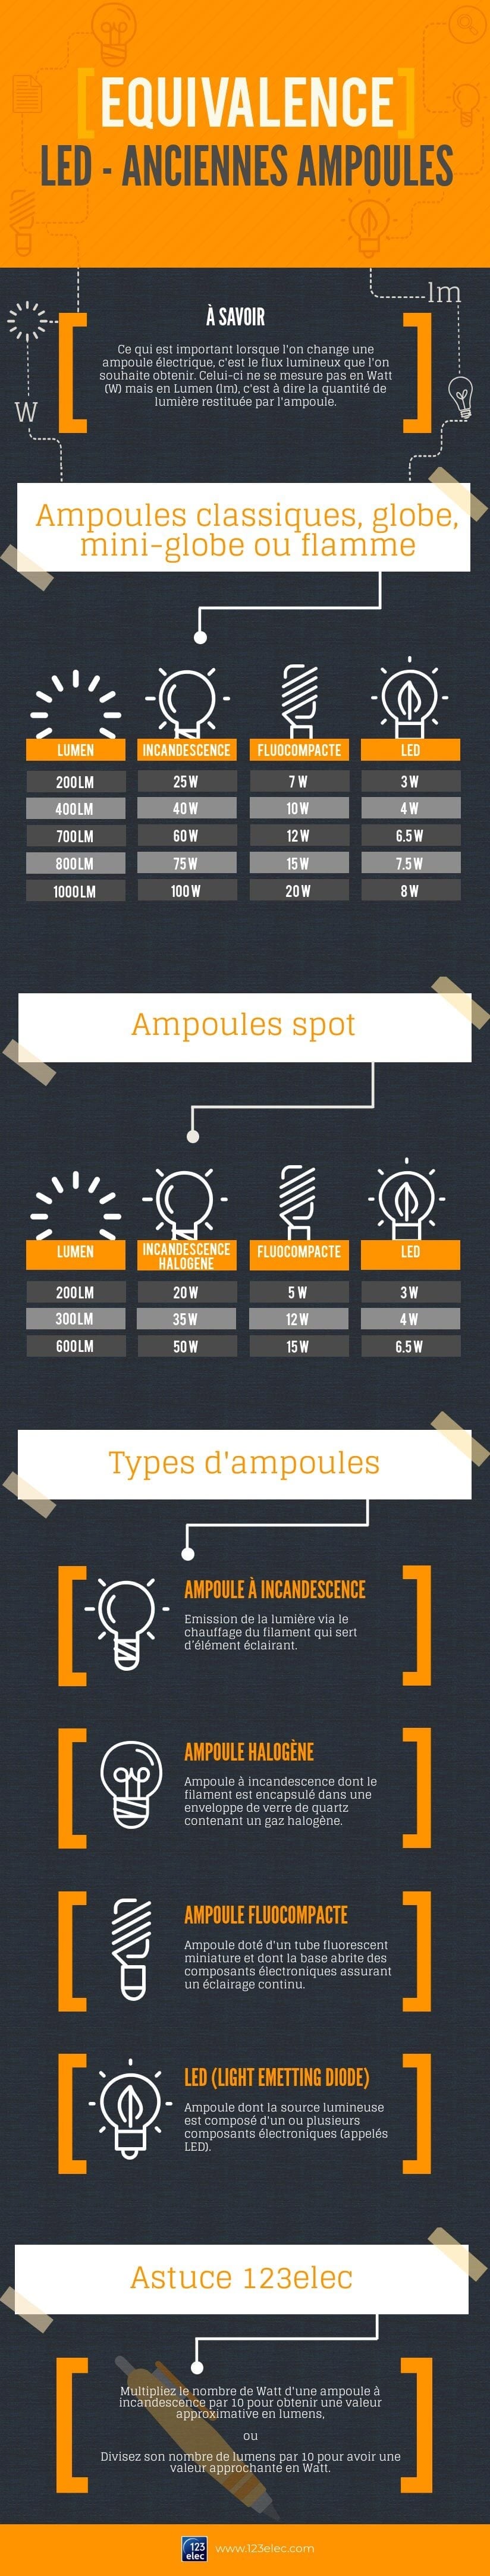 Infographie sur équivalence des ampoules LED